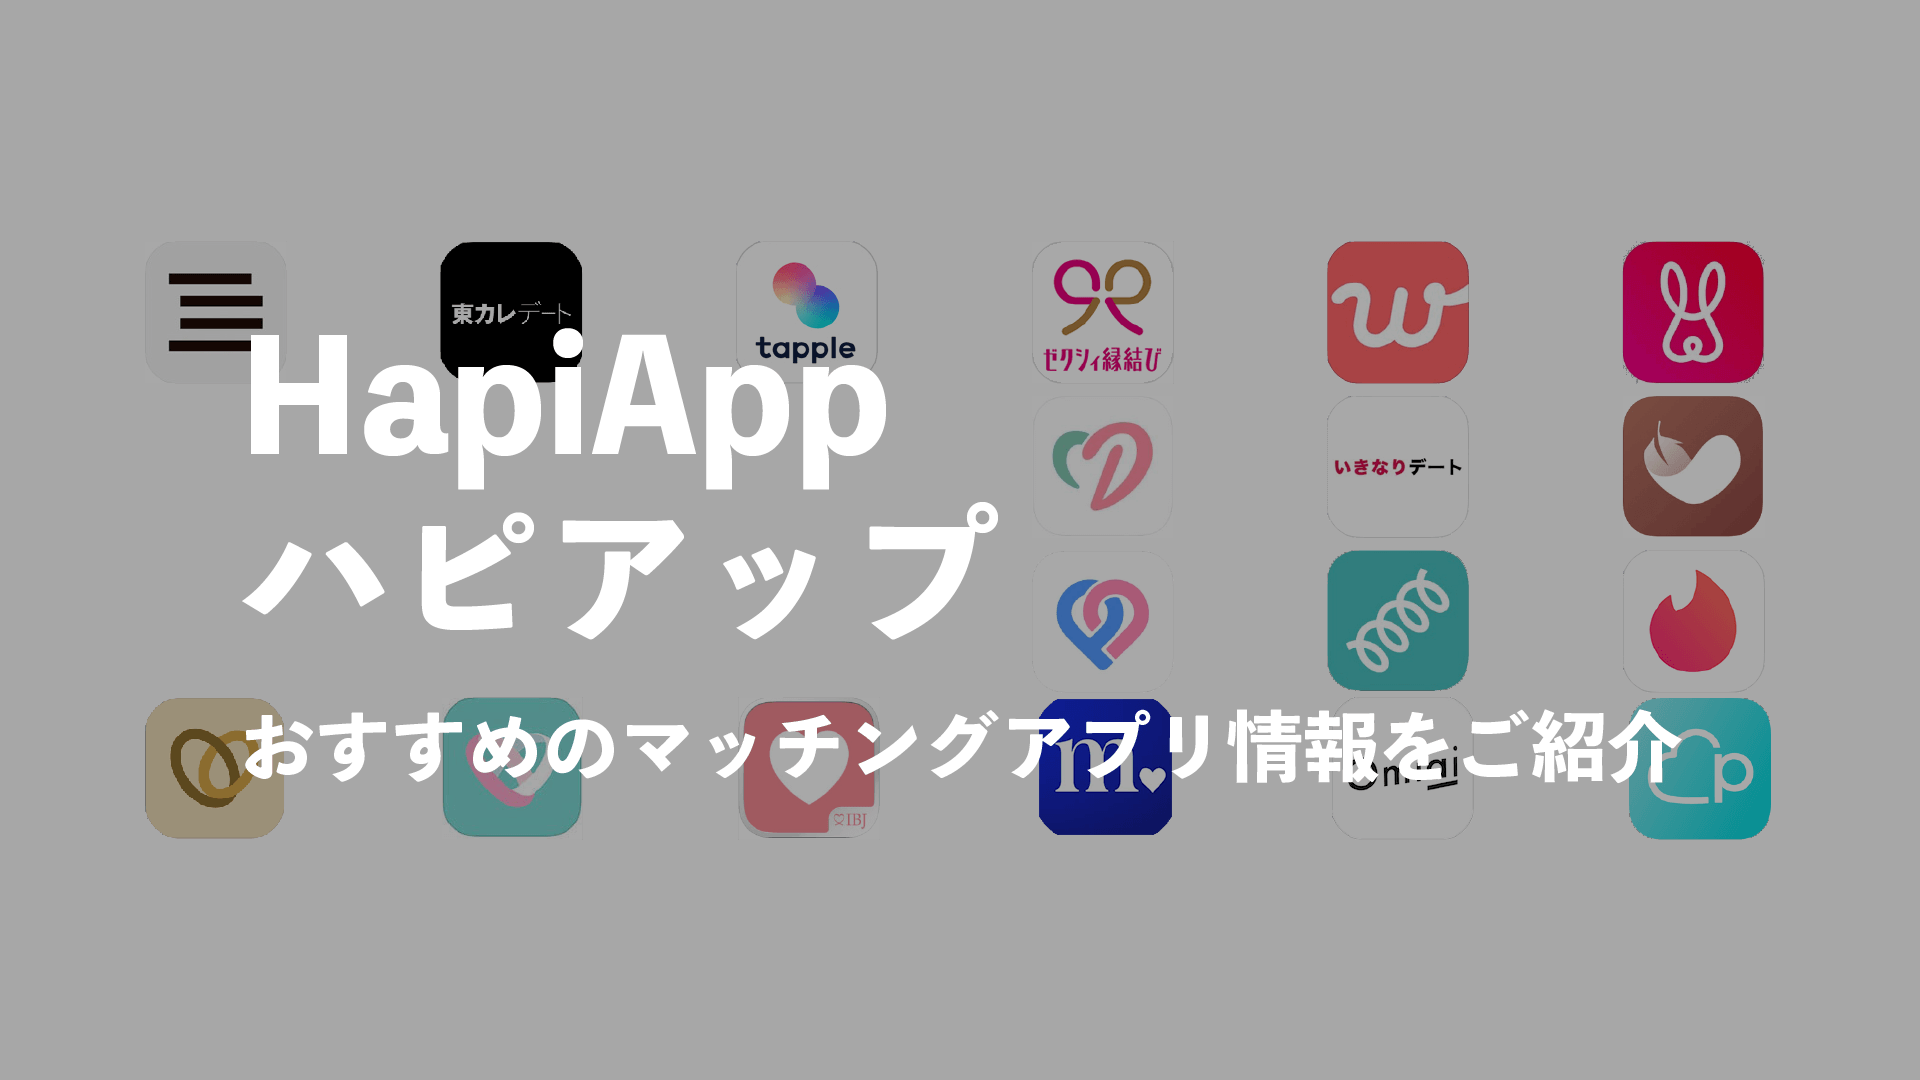 HapiApp(ハピアップ)